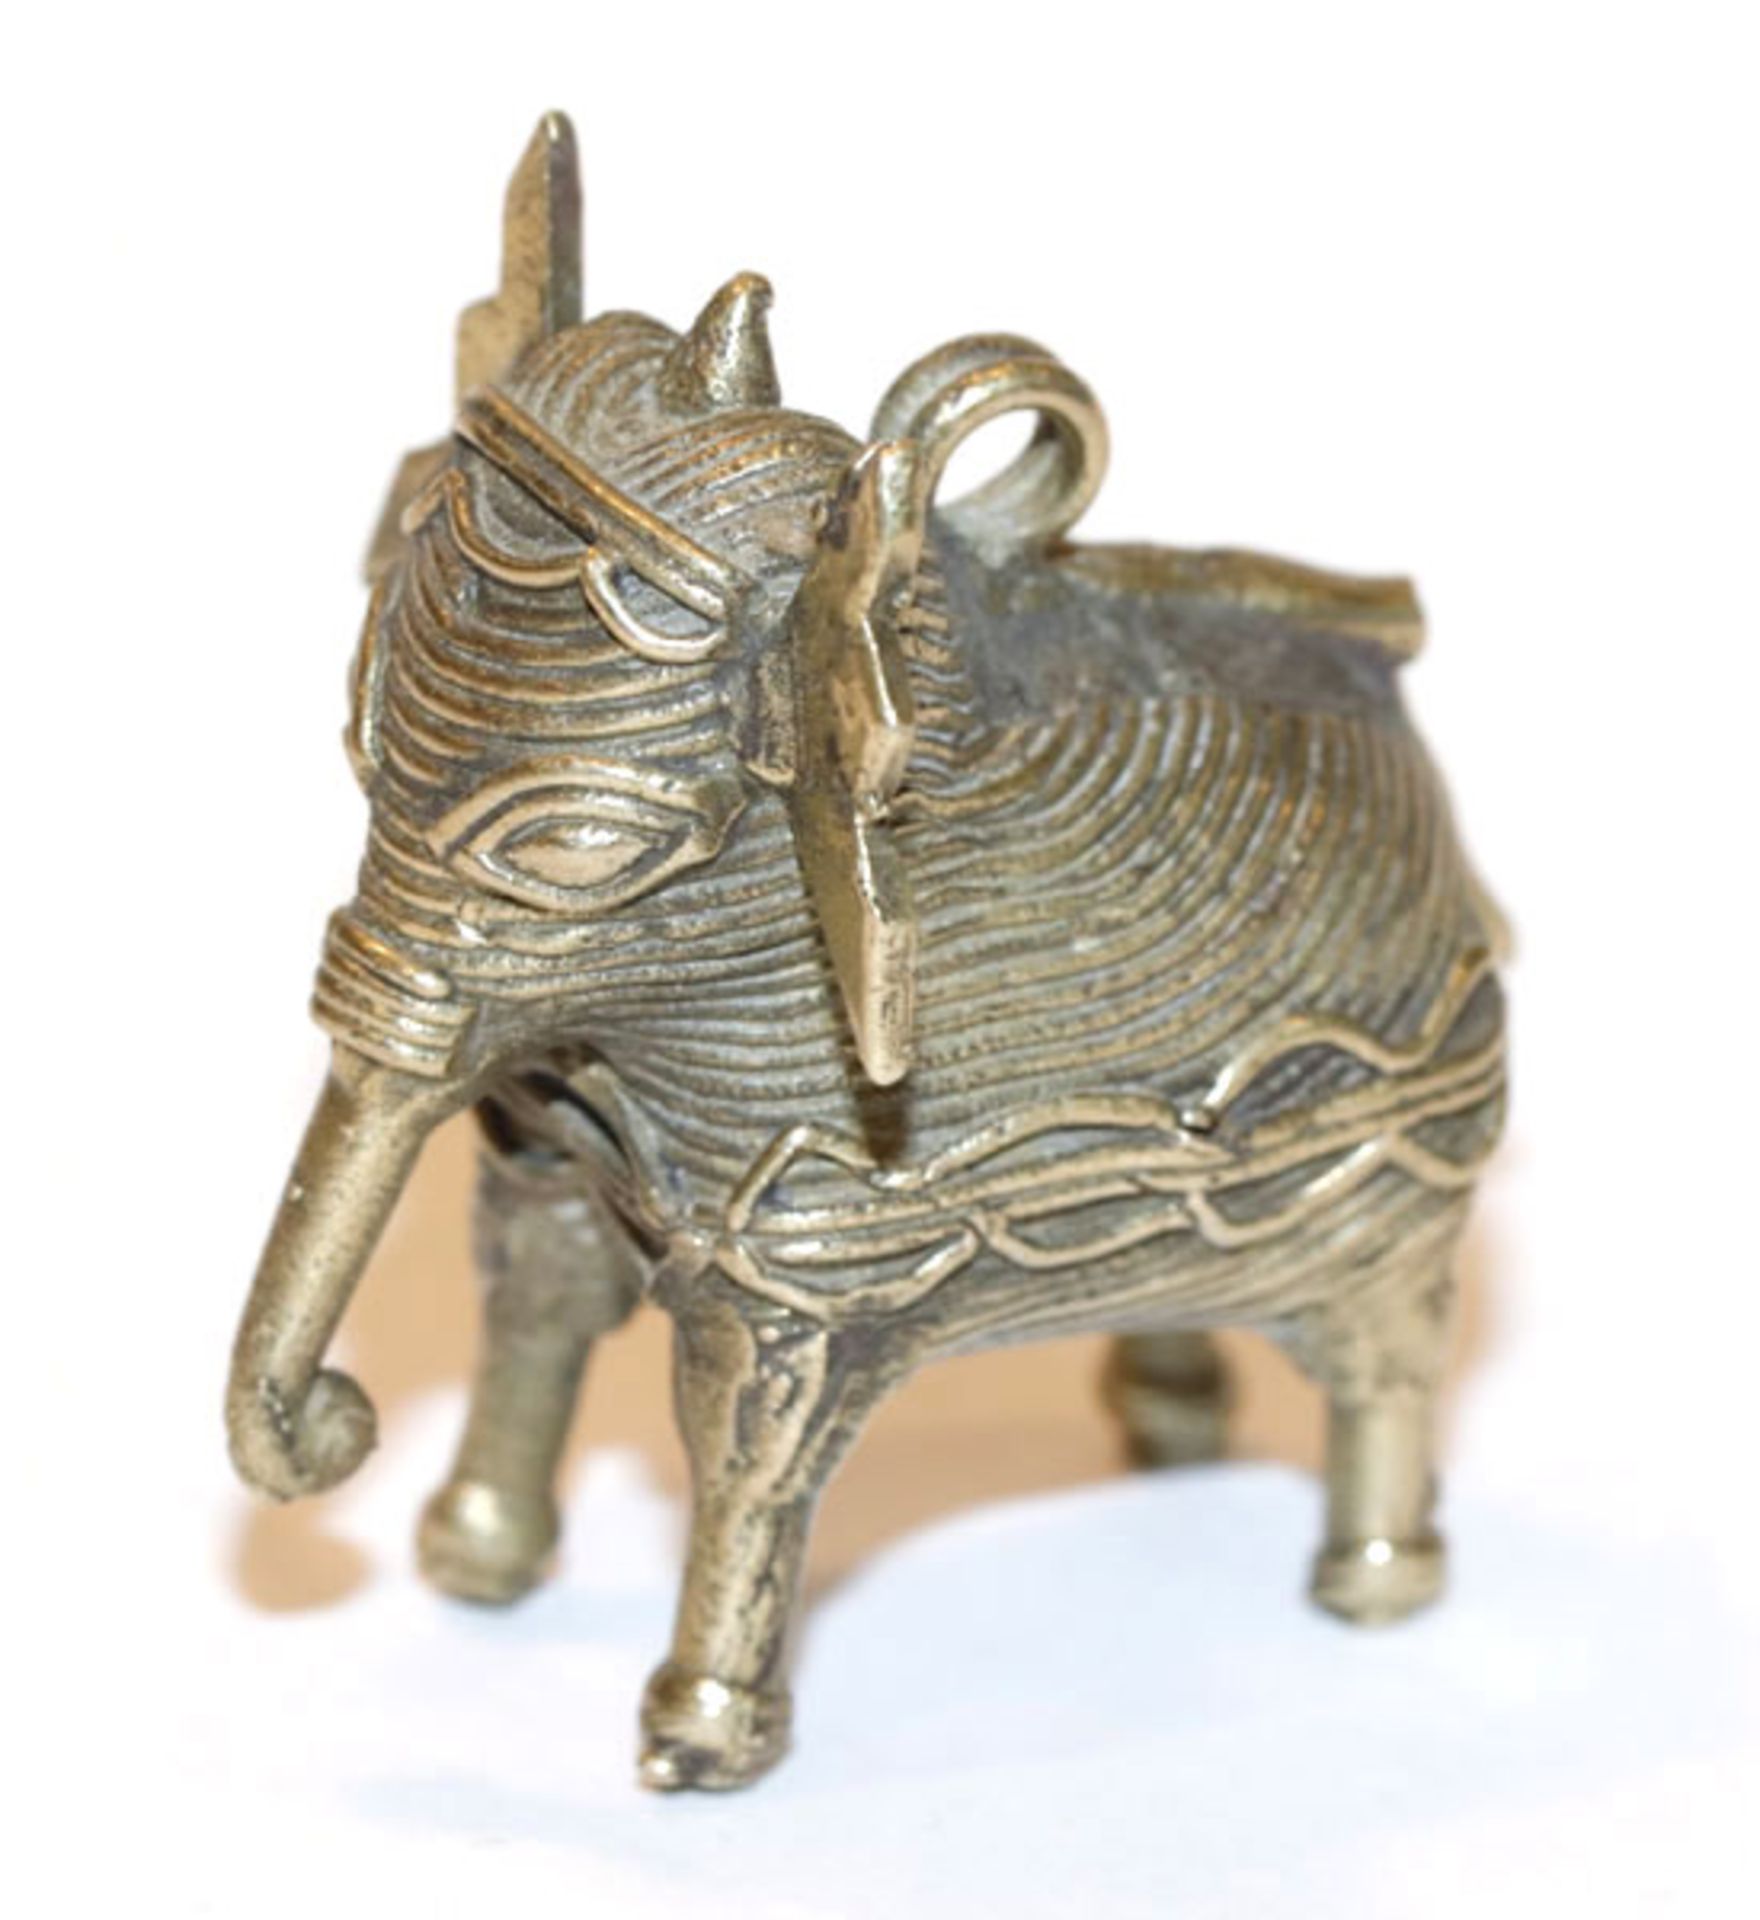 Metall Anhänger in Form eines Fantasie-Elefanten, H 4 cm